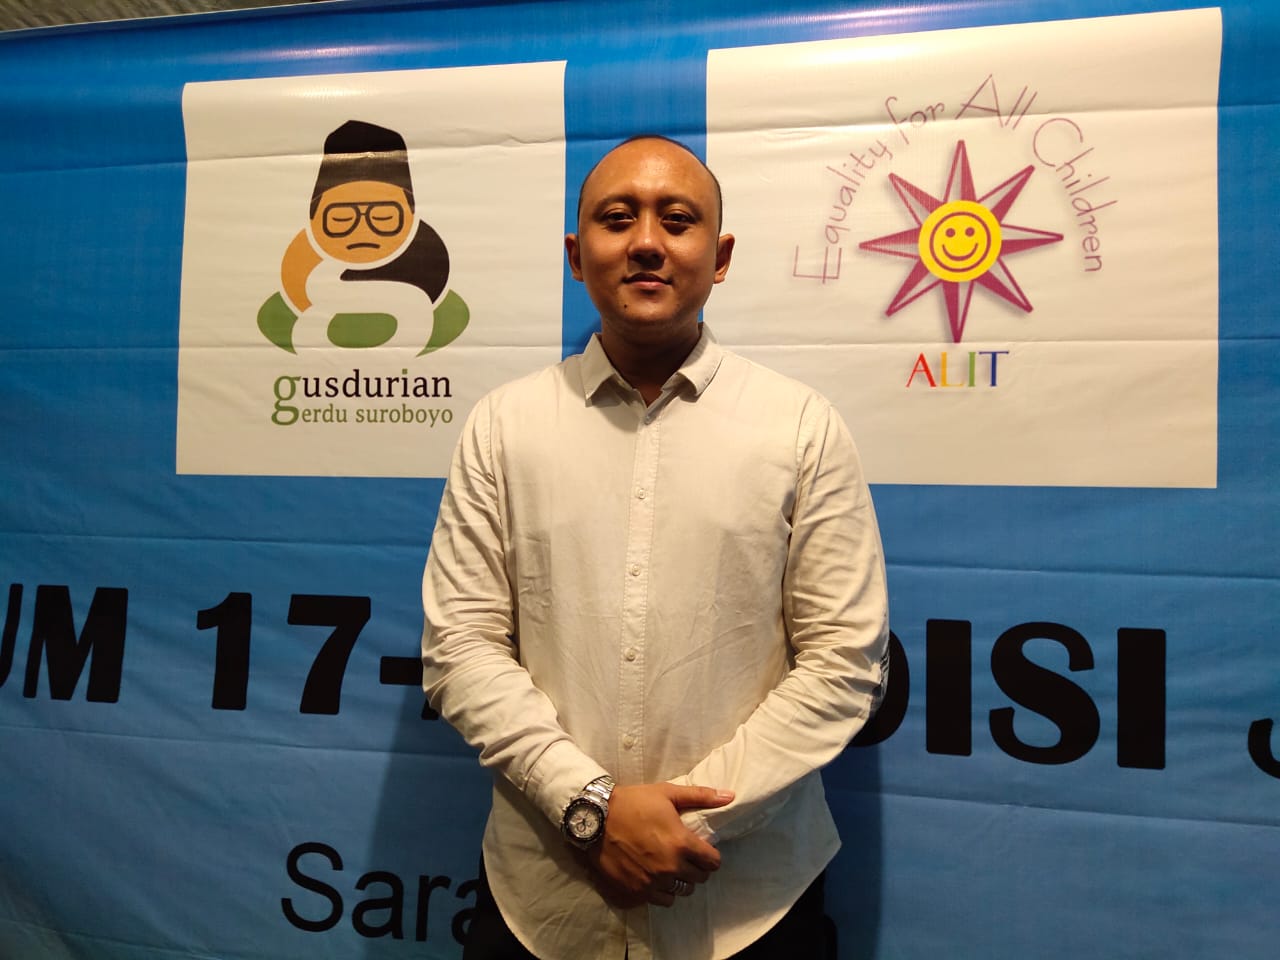 Dhimas saat hadir sebagai pembicara di acara Gusdurian Surabaya. (Foto: Alief/ngopibareng.id)